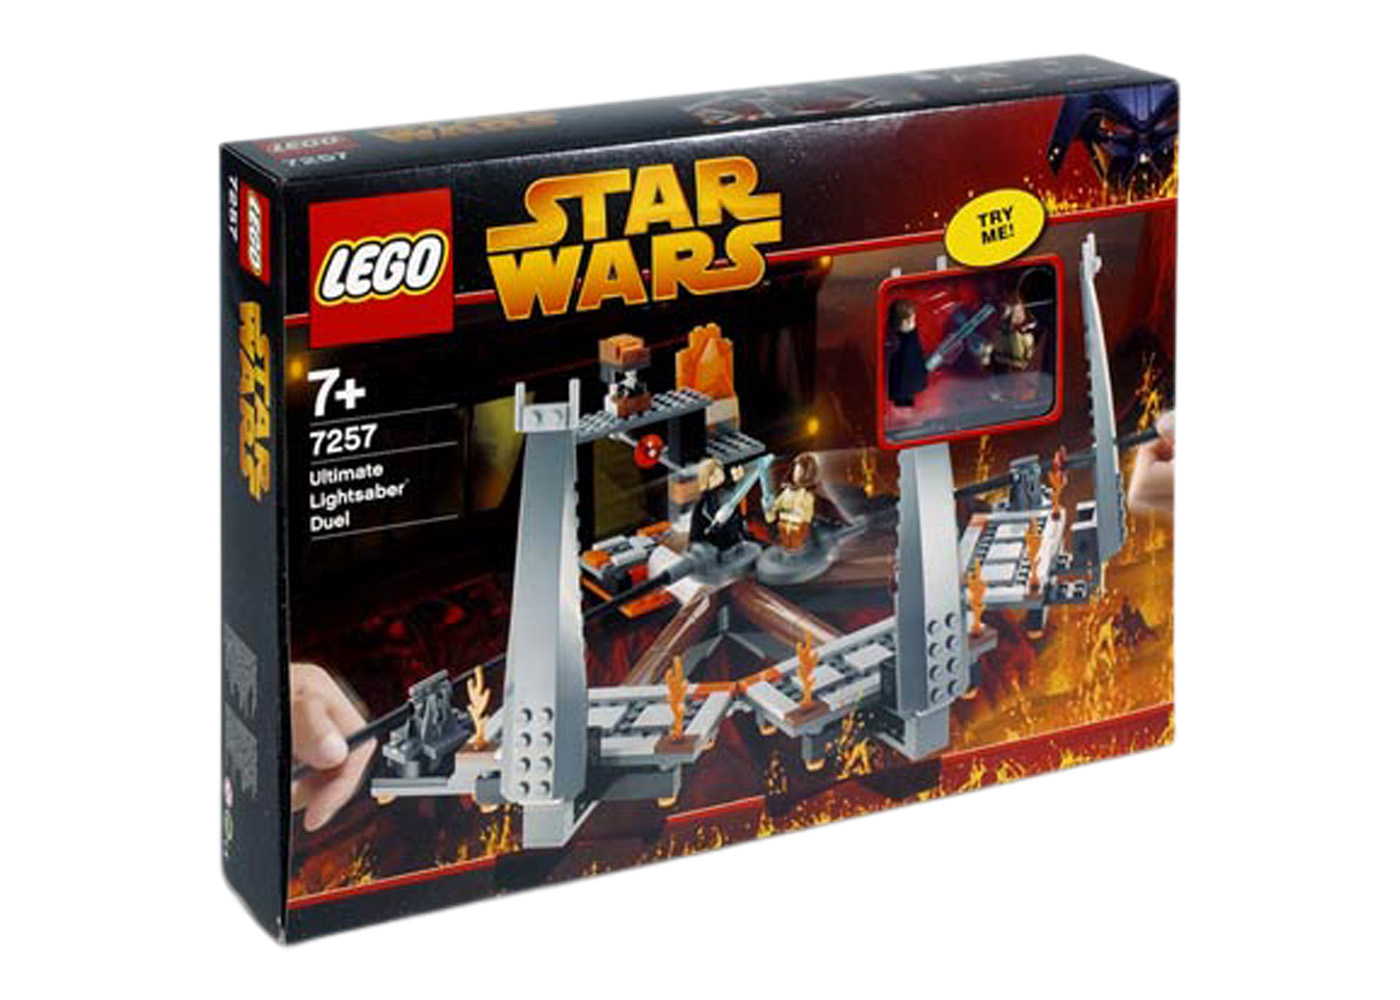 LEGO Star Wars Ultimate Lightsaber Duel Set 7257